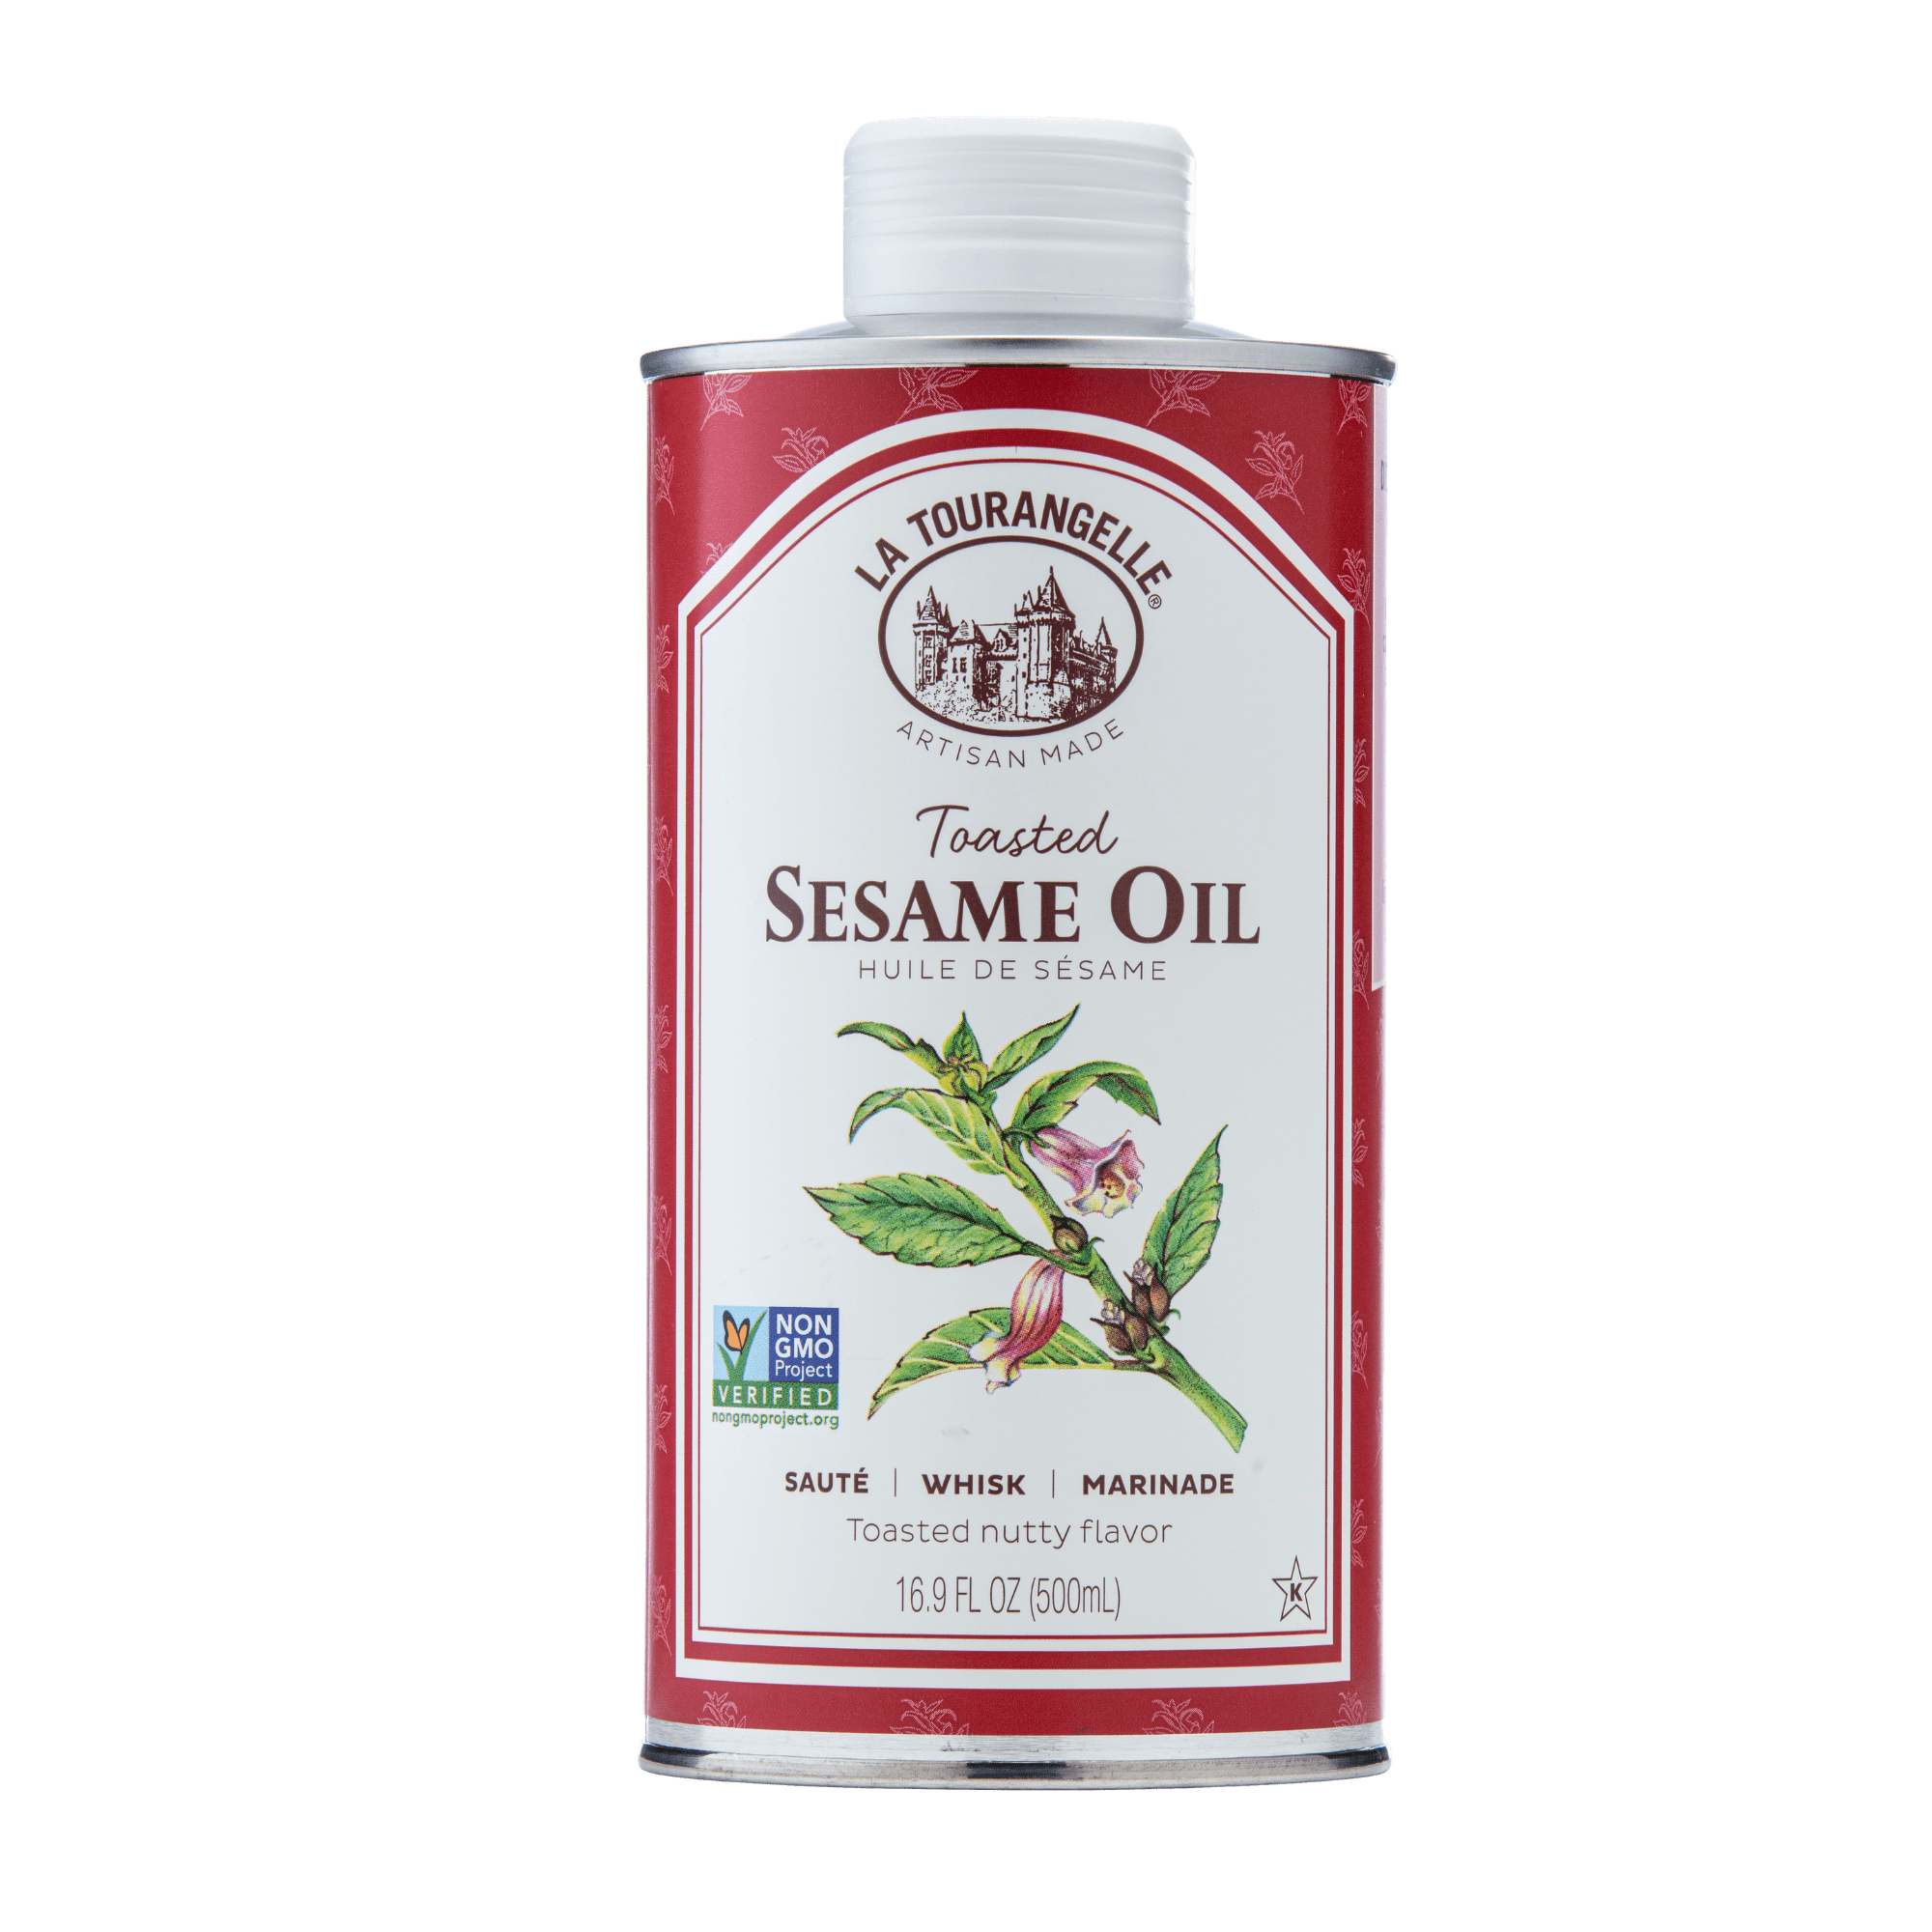 La Tourangelle Sesame Oil, Toasted - 16.9 fl oz